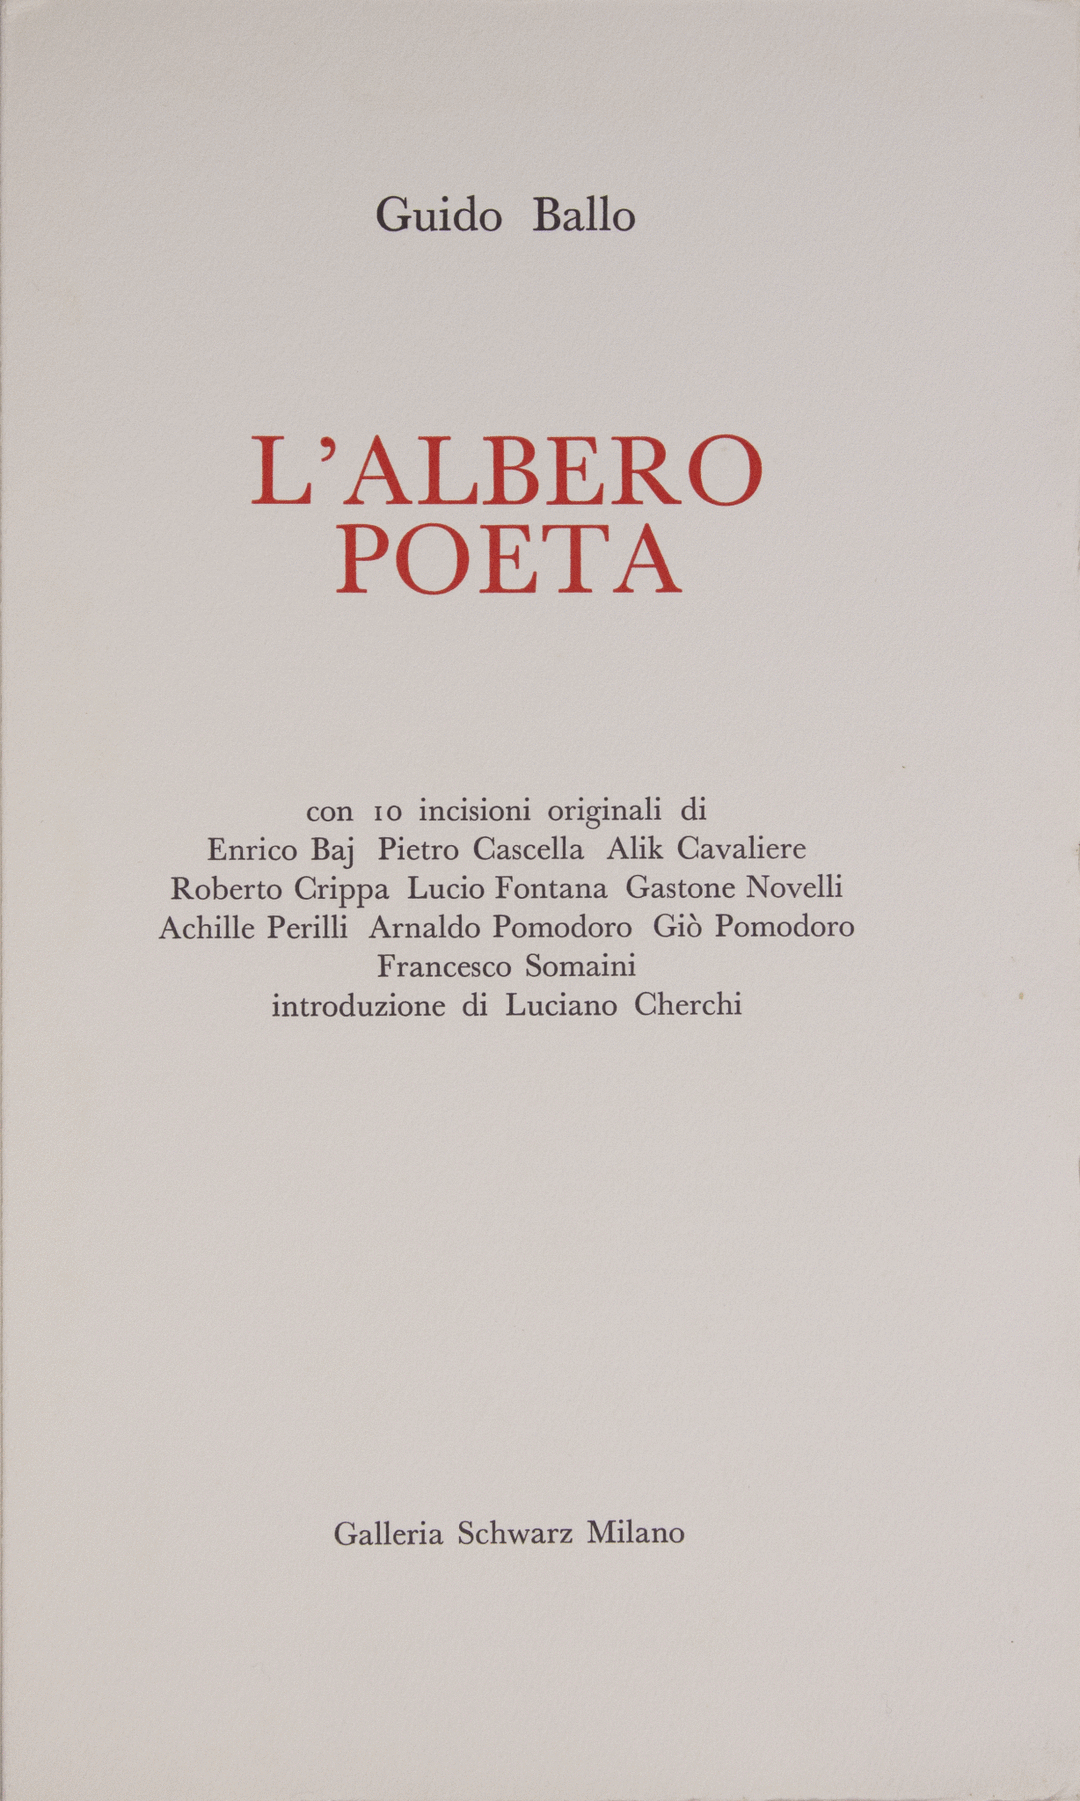 PERILLI Achille, La stella polare, 1965, Acquaforte originale firmata - EmporiumArt